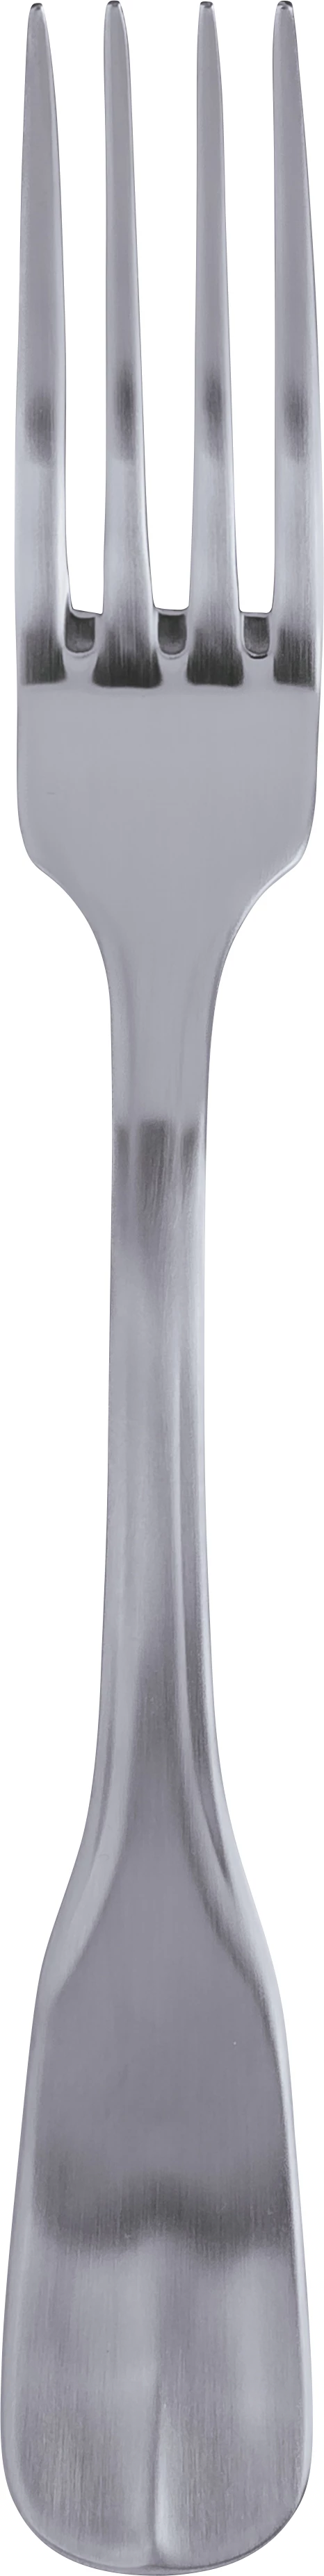 Dalper D' Avila spisegaffel, 21 cm